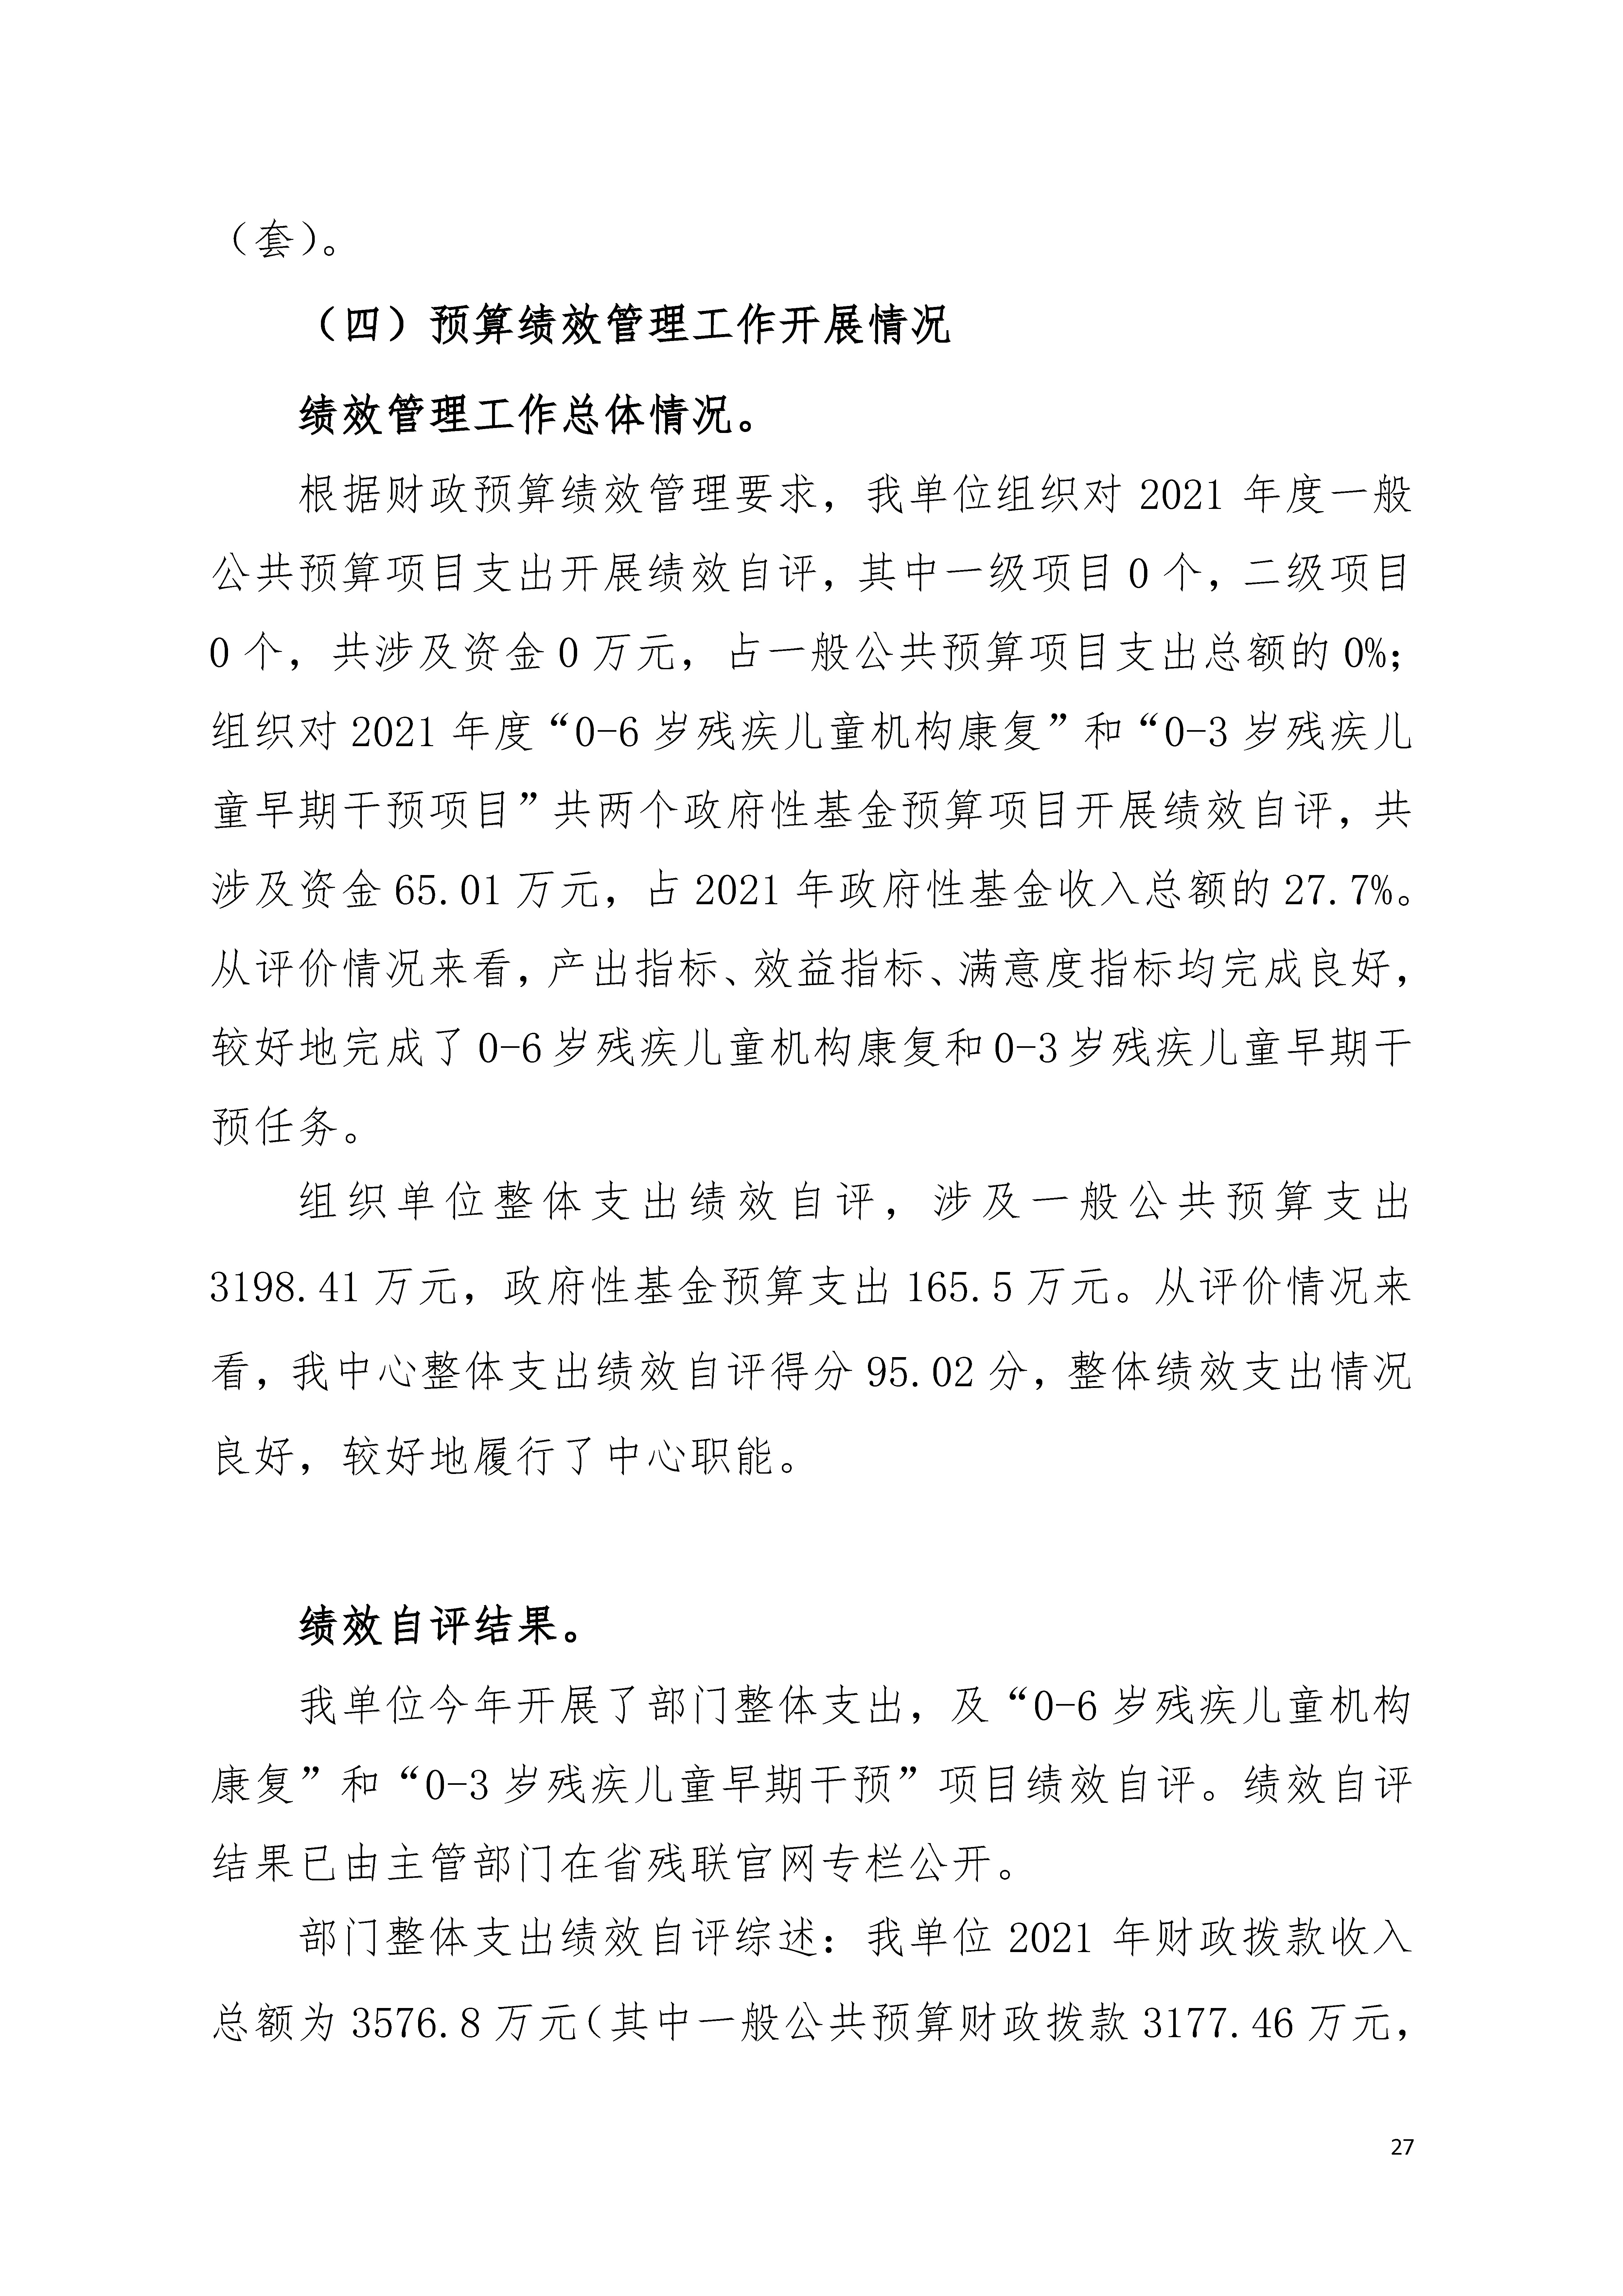 2021年广东省残疾人康复中心部门决算 0629_页面_27.jpg